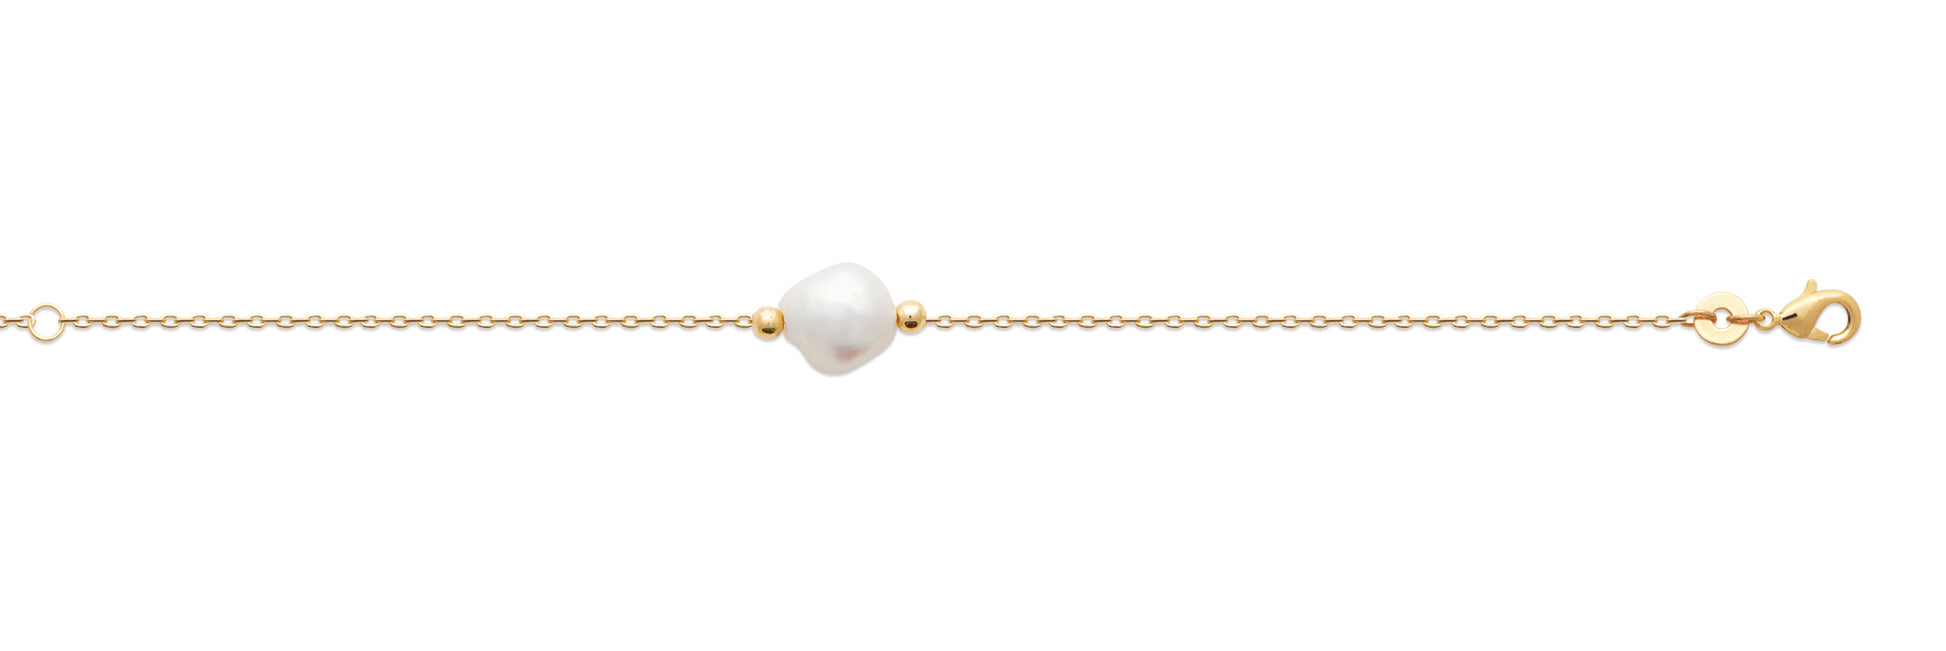 Armband mit Süßwasser-Zuchtperle vergoldet - Armband mit weißer Perle